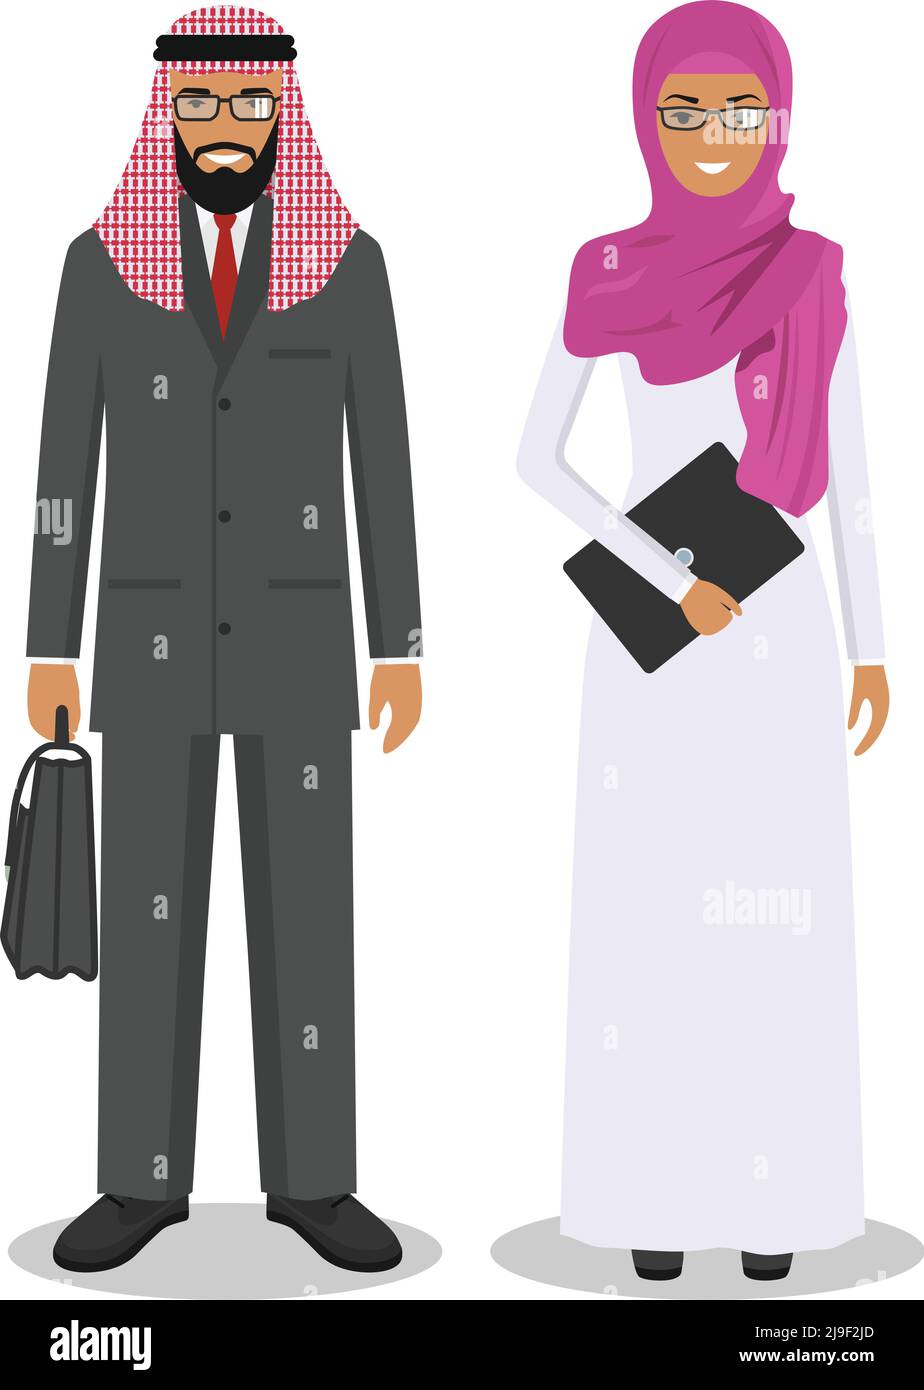 Gruppo di persone arabe creative isolate su sfondo bianco. Insieme di uomo e donna arabo di affari che si levano in piedi insieme. Carino e semplice in stile piatto. Illustrazione Vettoriale